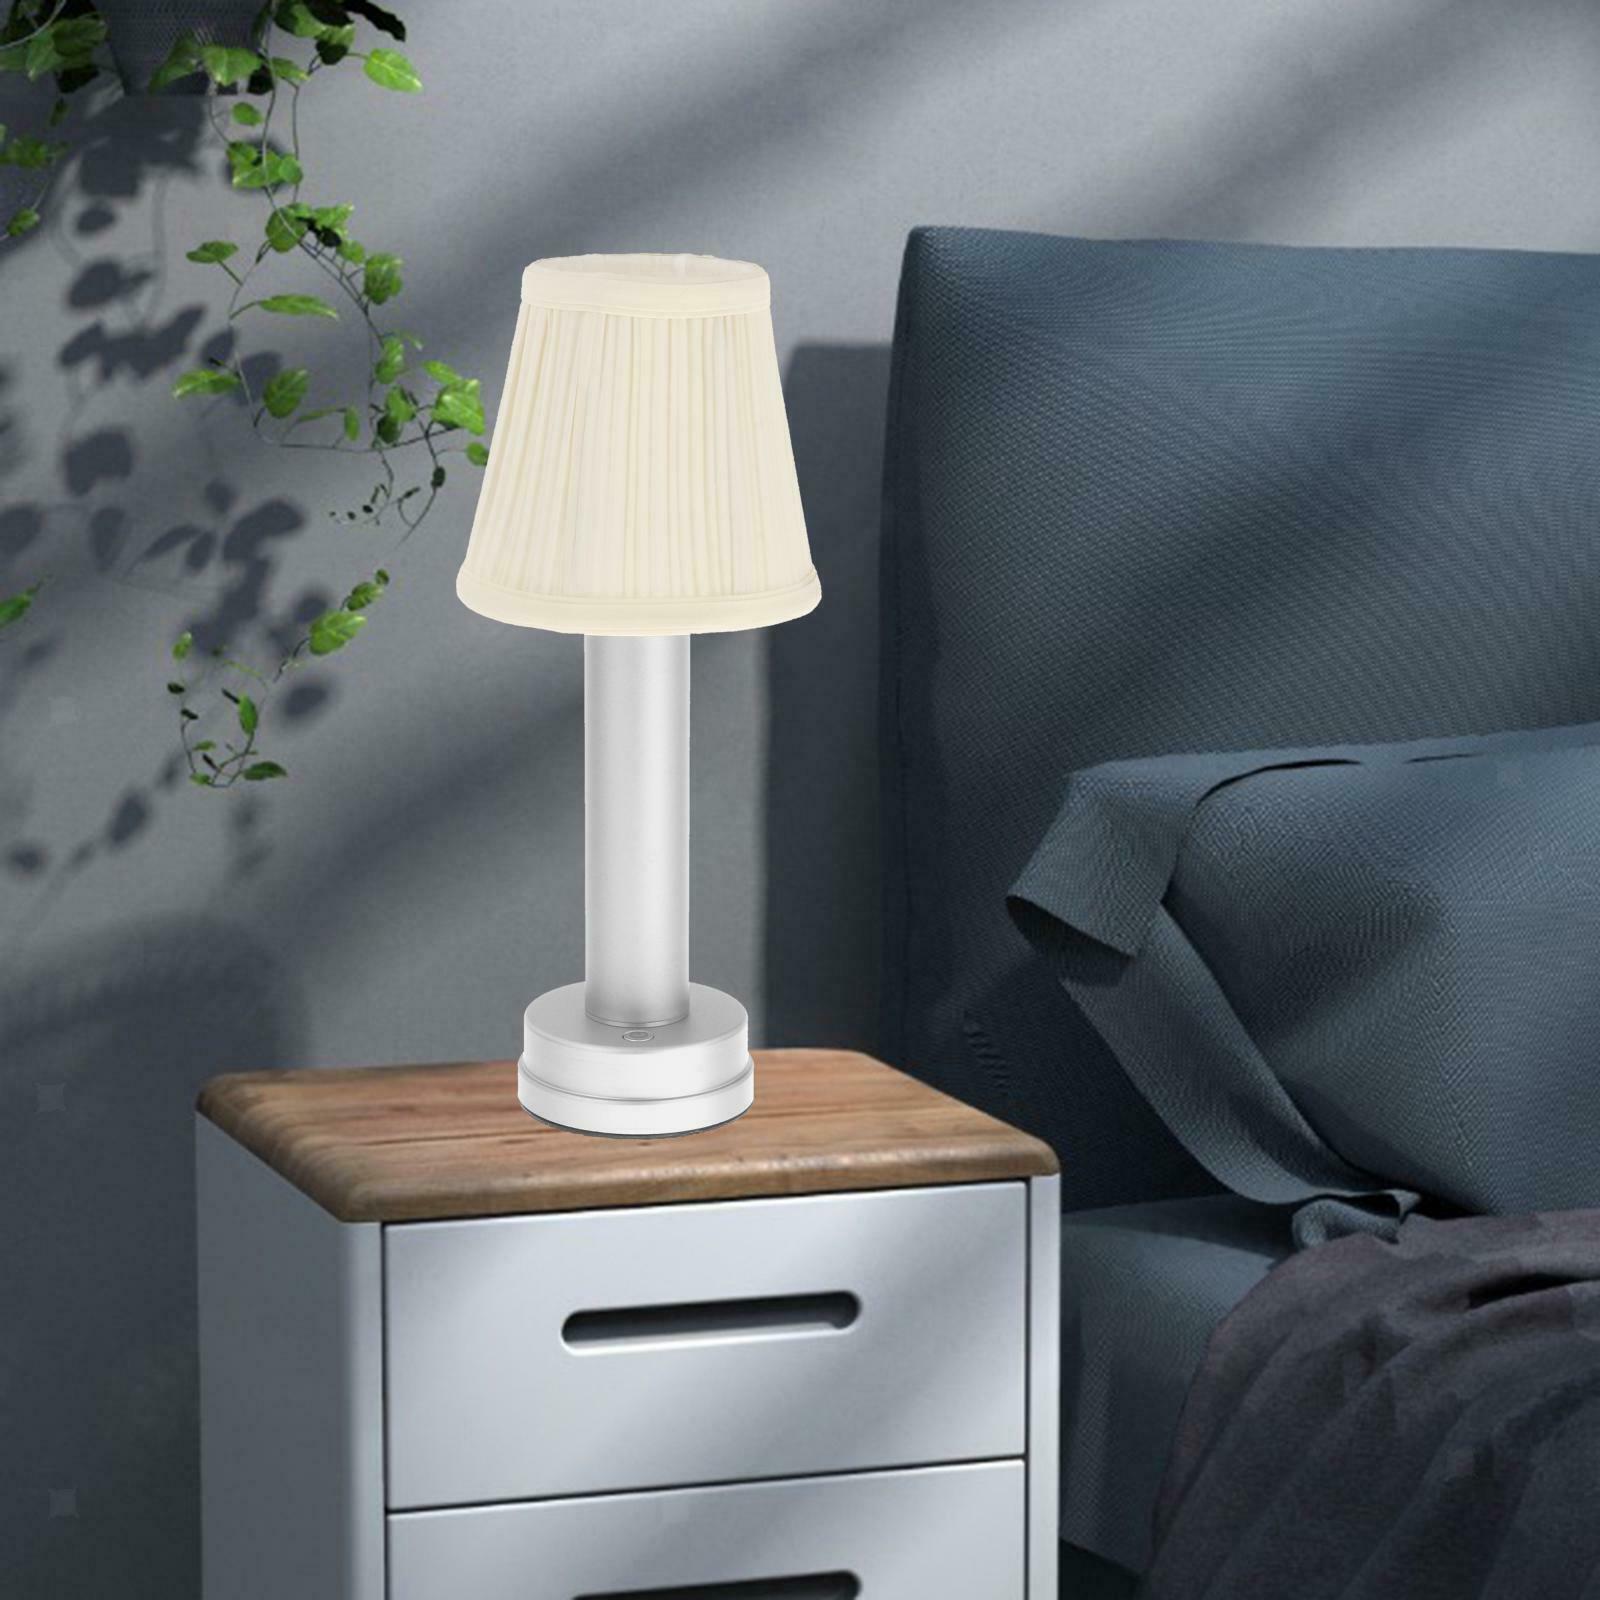 Iron Cordless Mini Table Lamp LED Lamp Reading Light Night Light Living Room